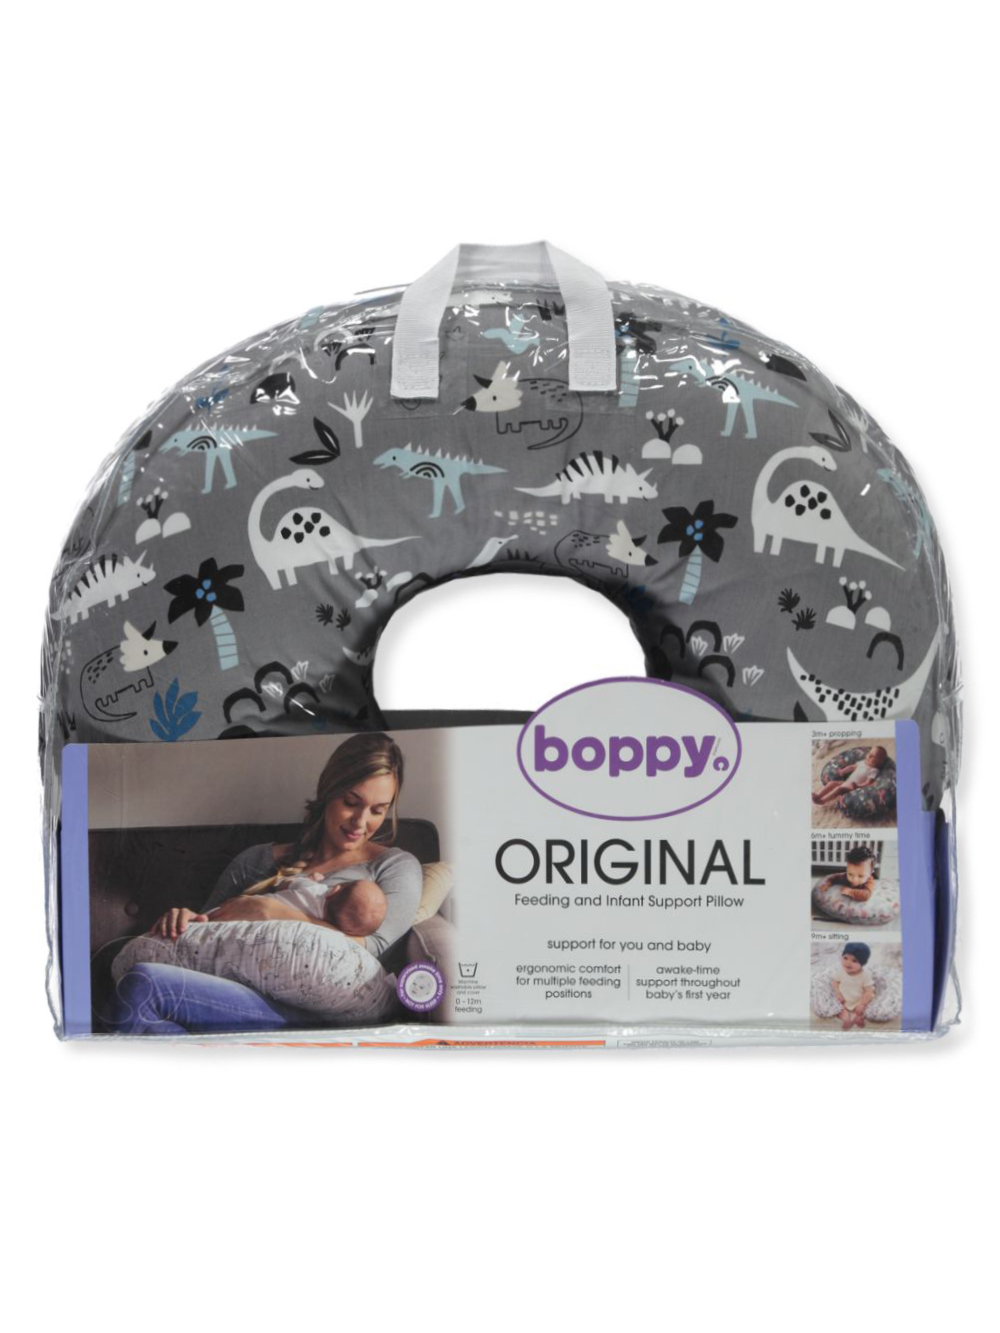 Boppy Original Feeding & Infant Support Pillow